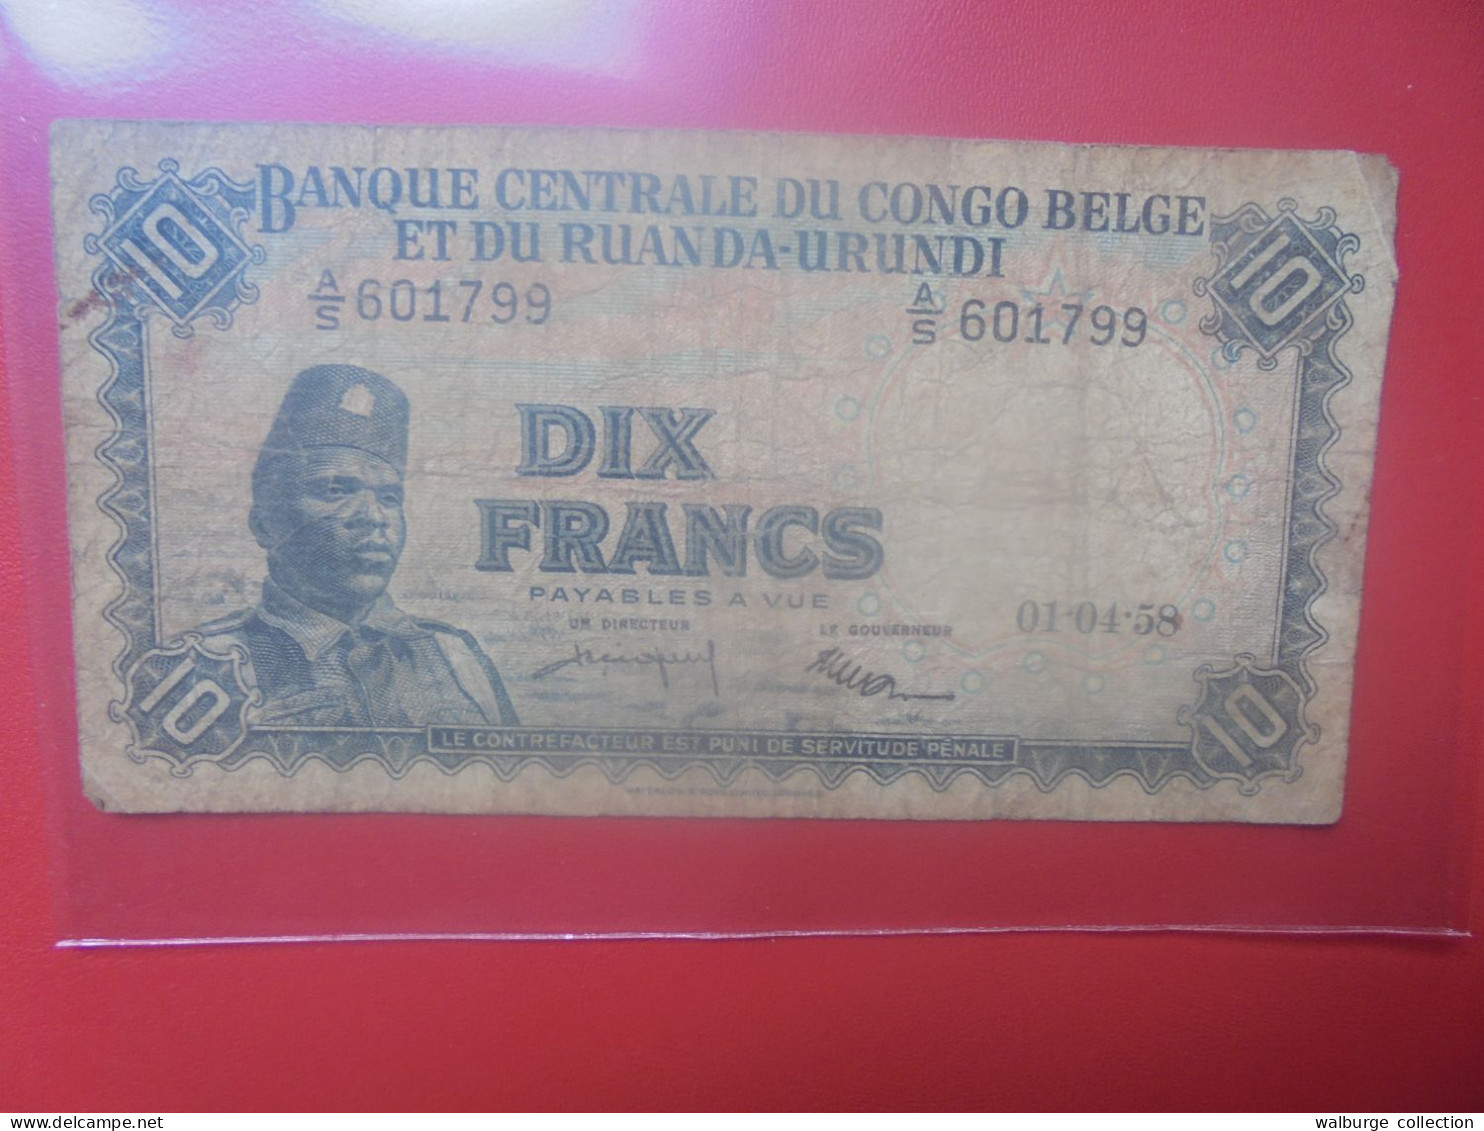 CONGO BELGE 10 FRANCS 1-4-58 Circuler (B.33) - Bank Van Belgisch Kongo